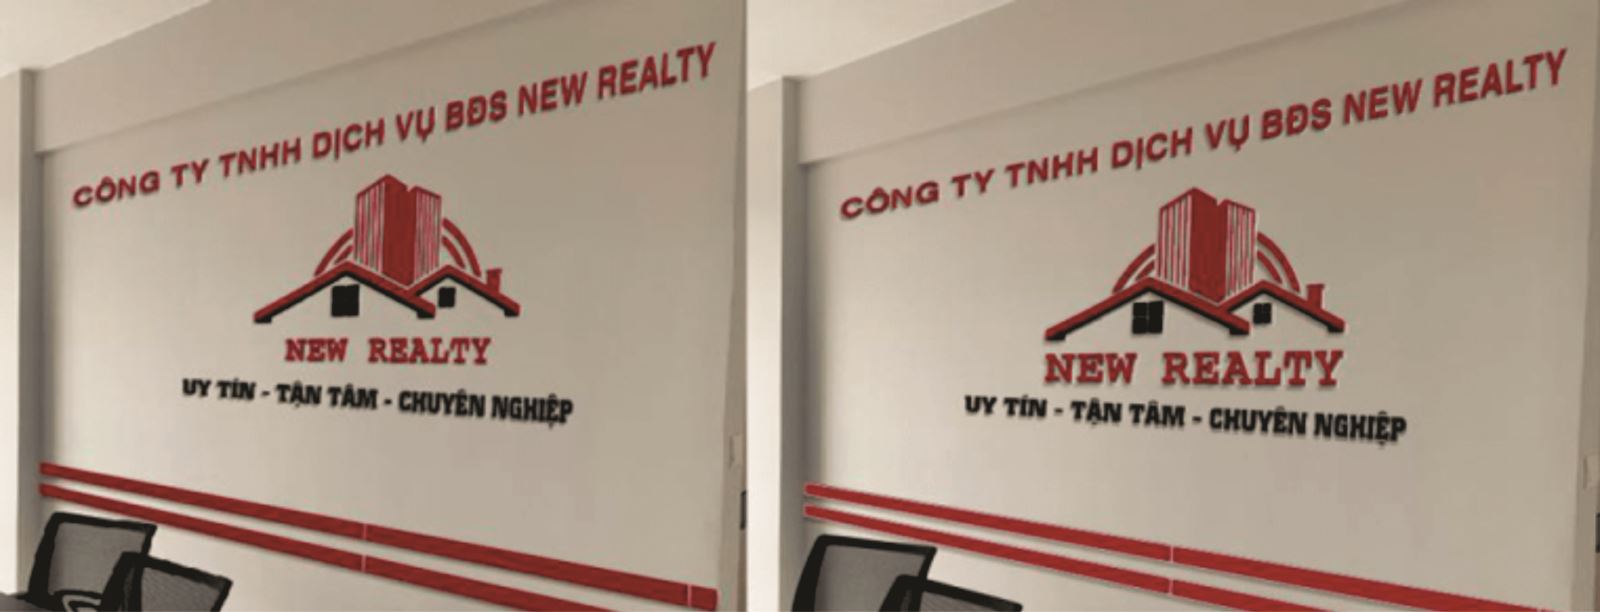 Biển quảng cáo tên công ty xây dựng trong nhà